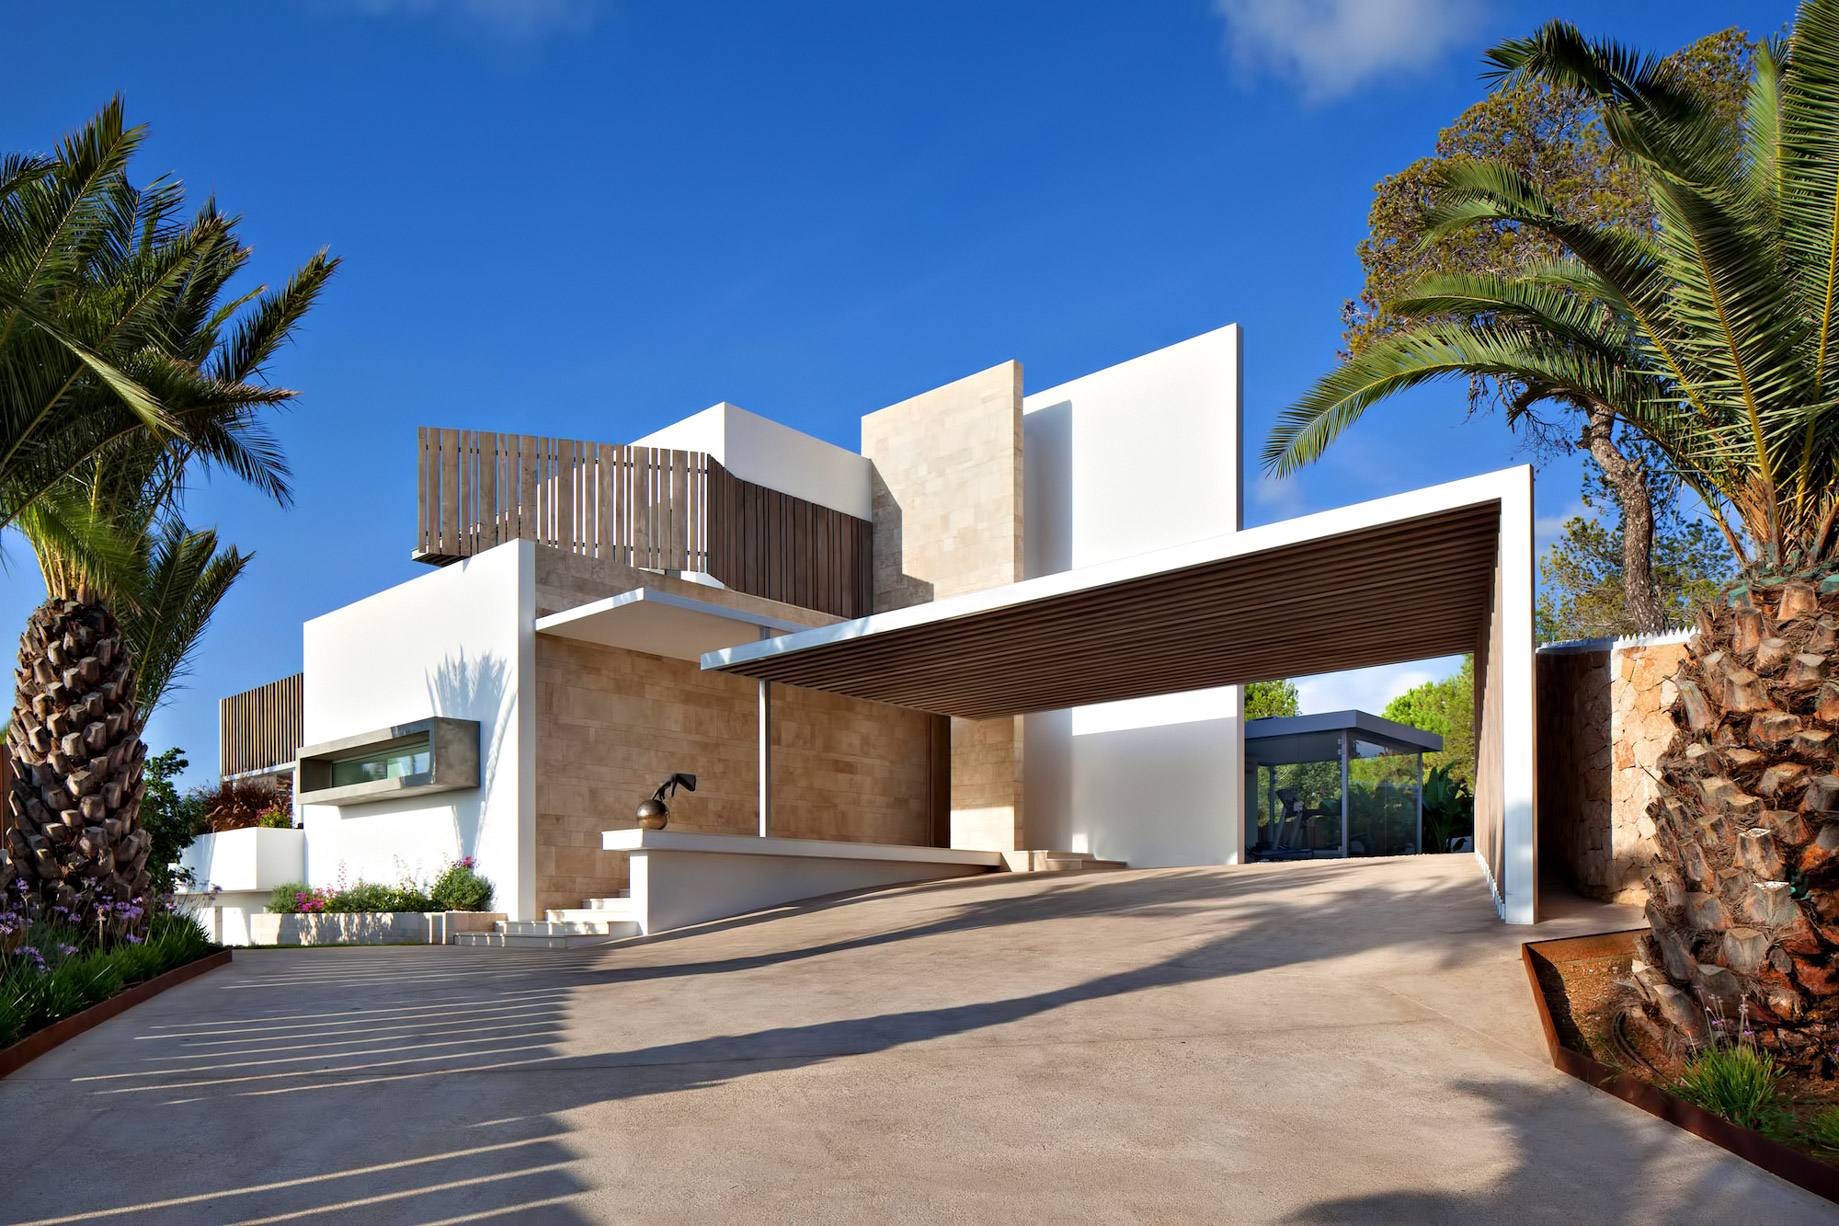 Roca Llisa Luxury Estate - Ibiza, Balearic Islands, Spain